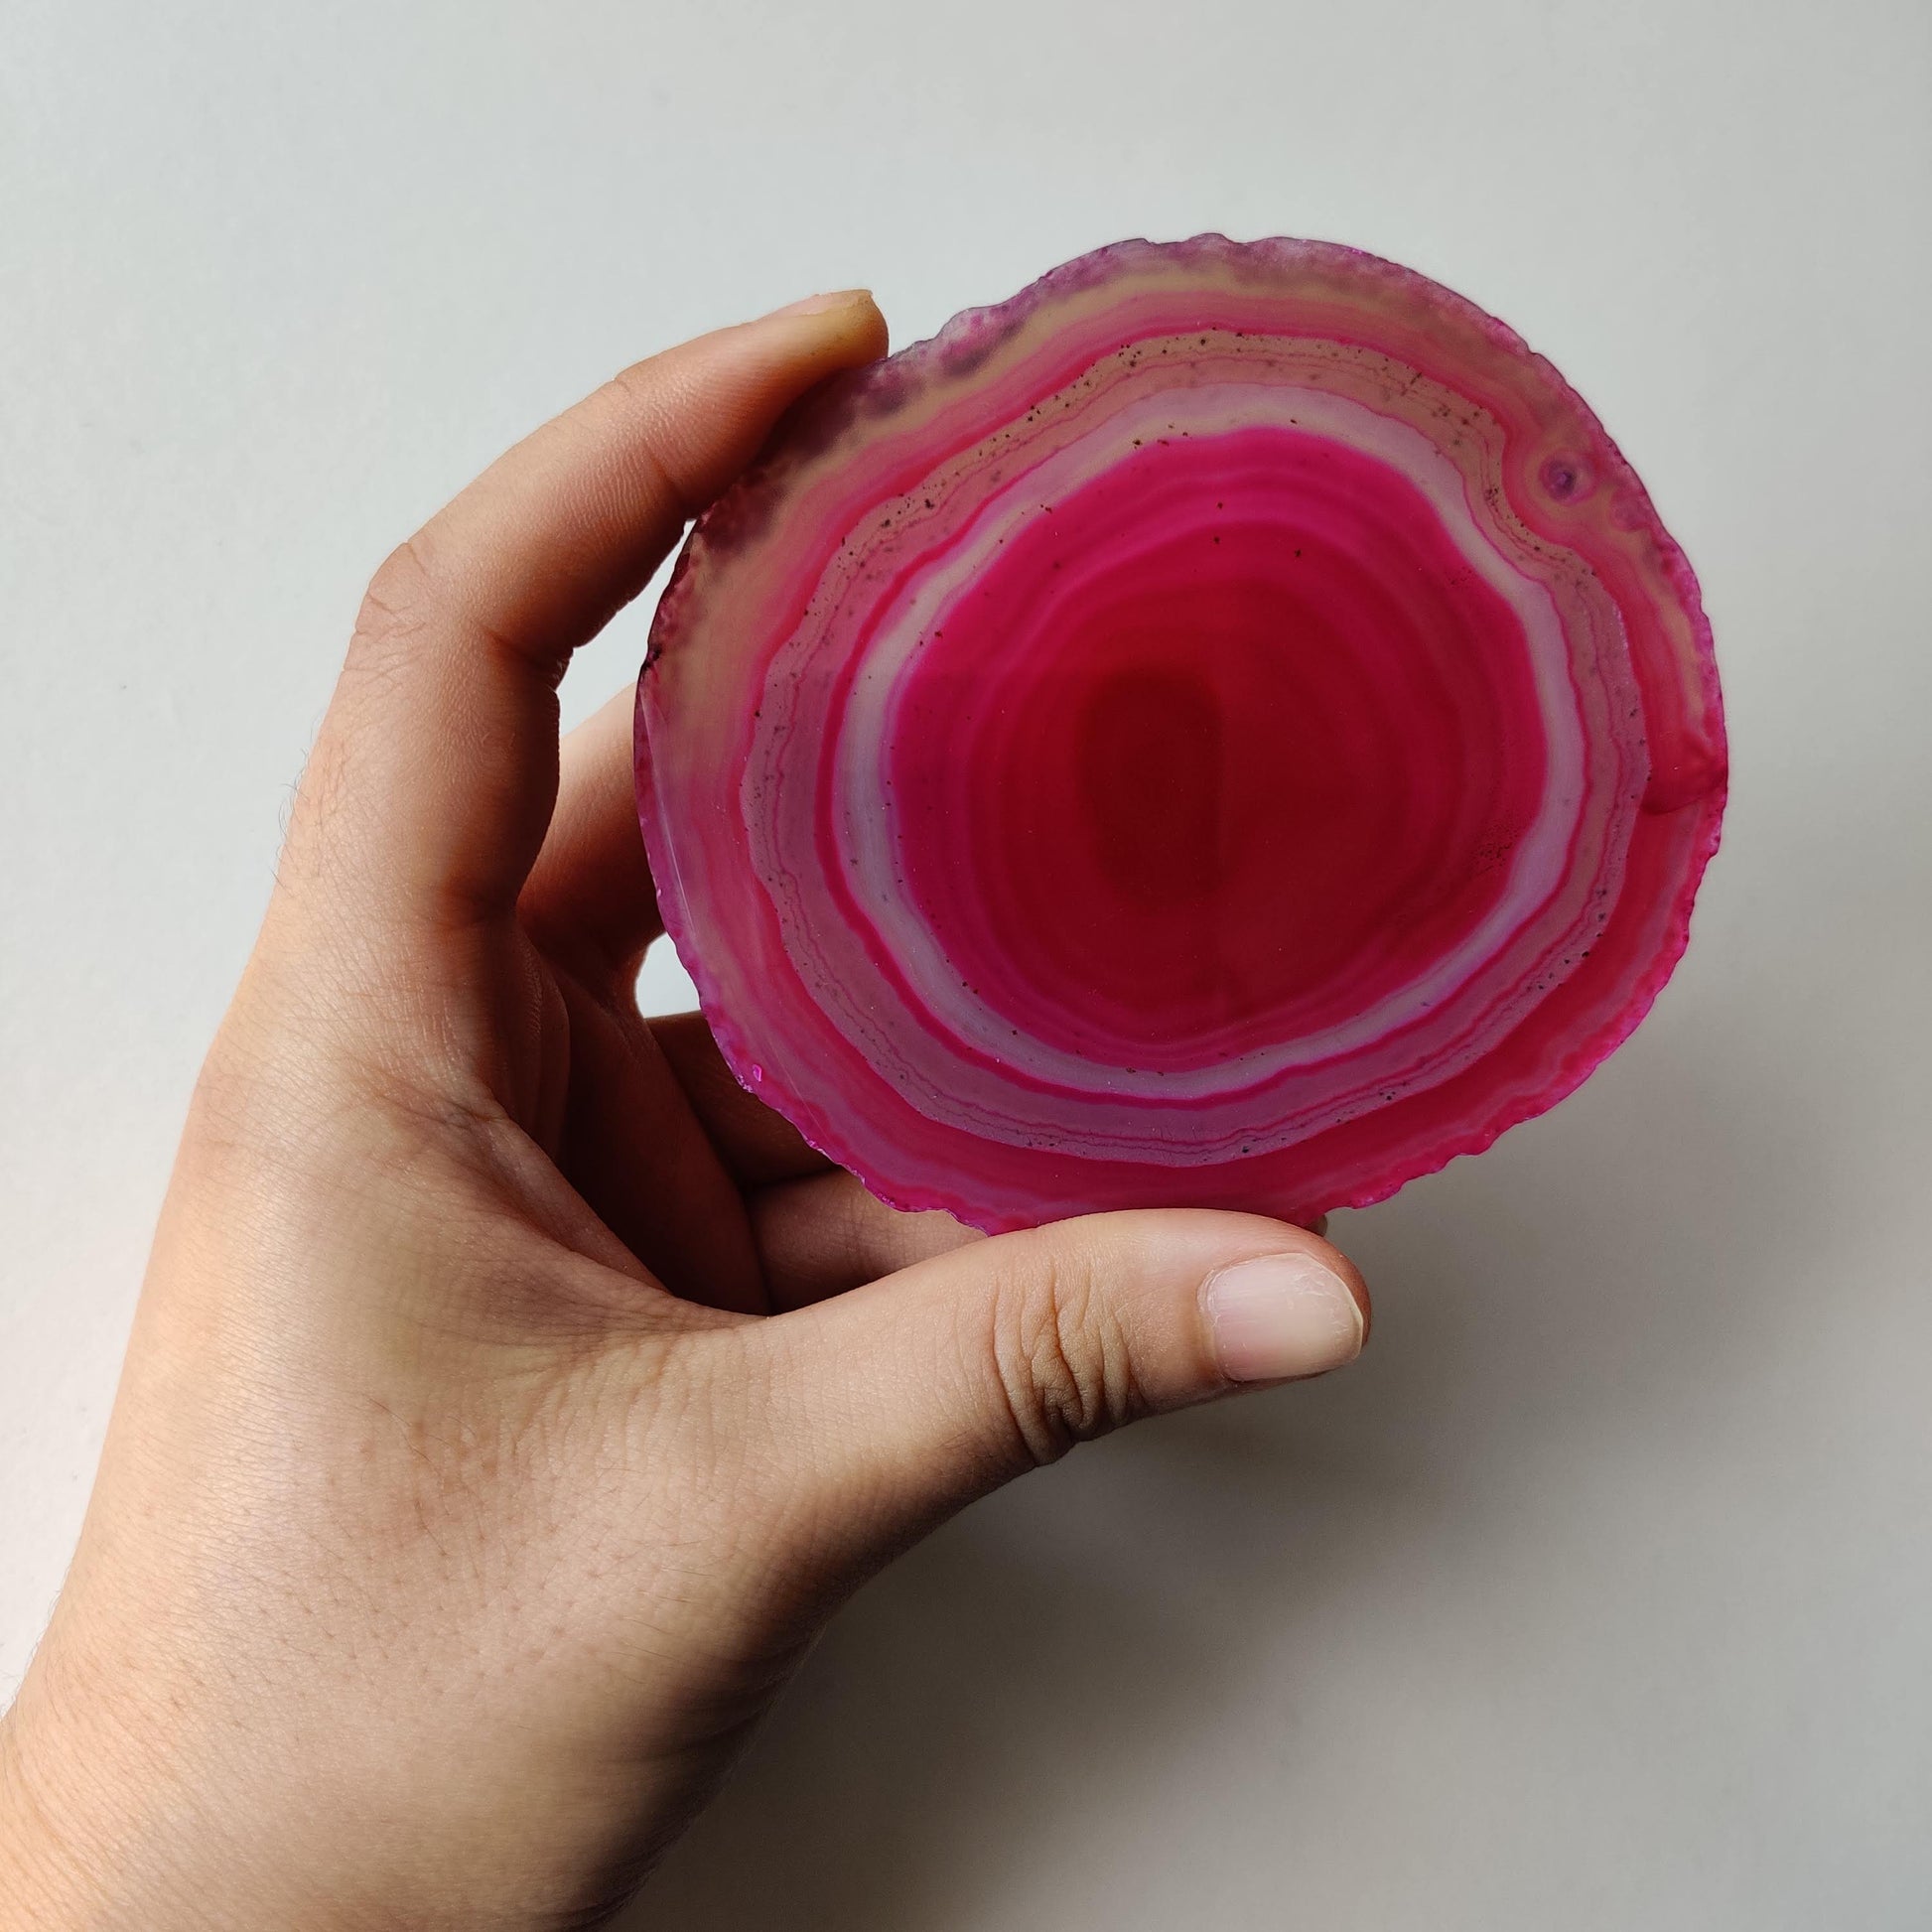 Pink Agate Slice - Rivendell Shop